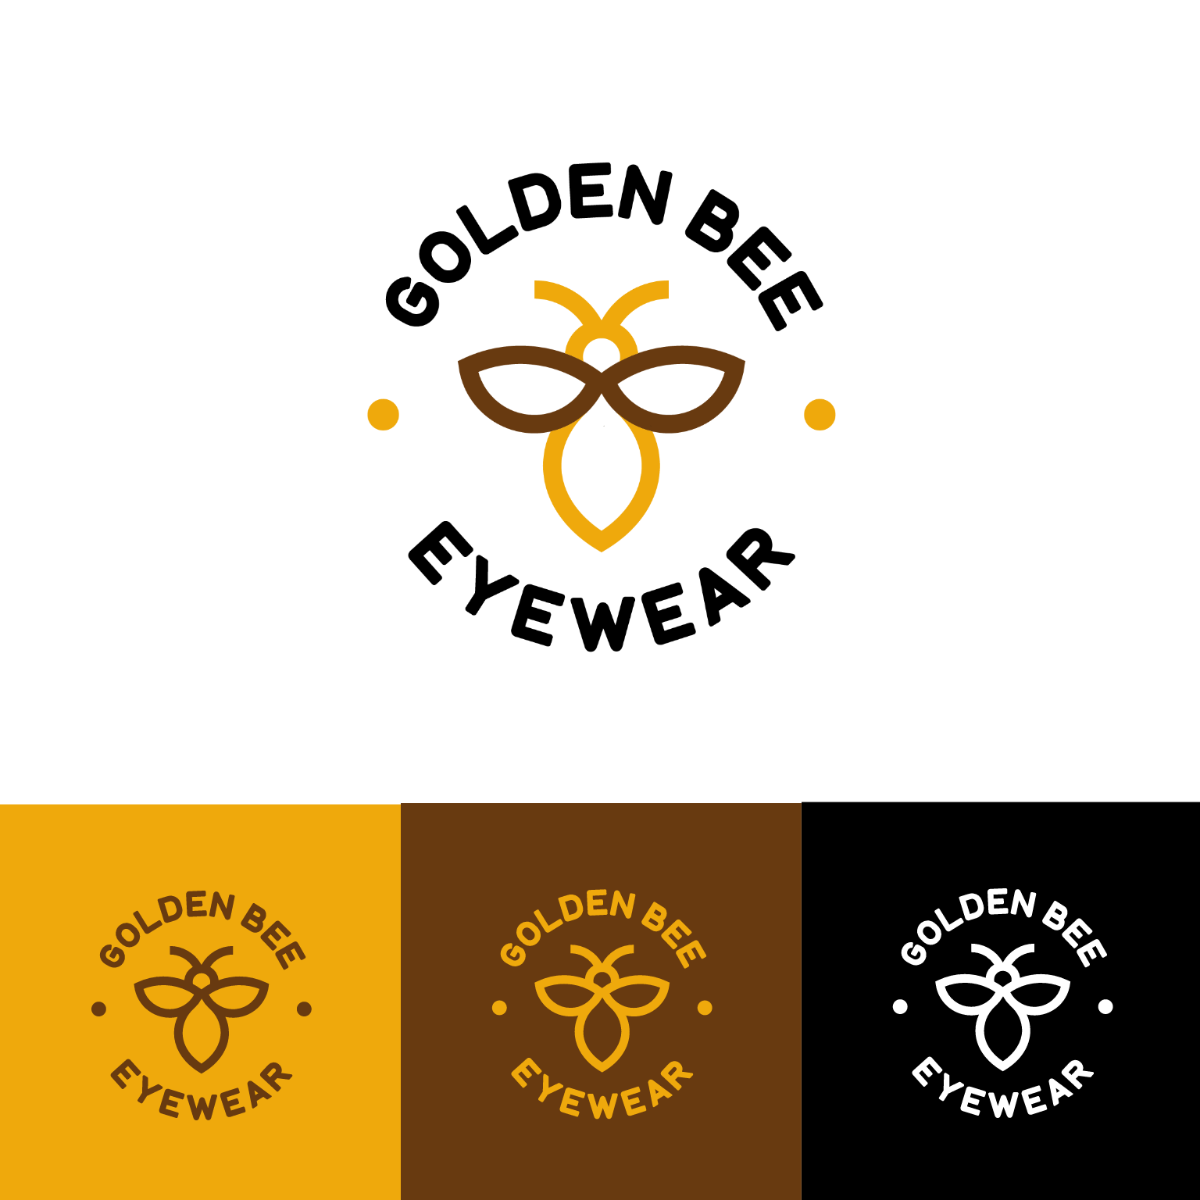 Bee Logo Vector Template